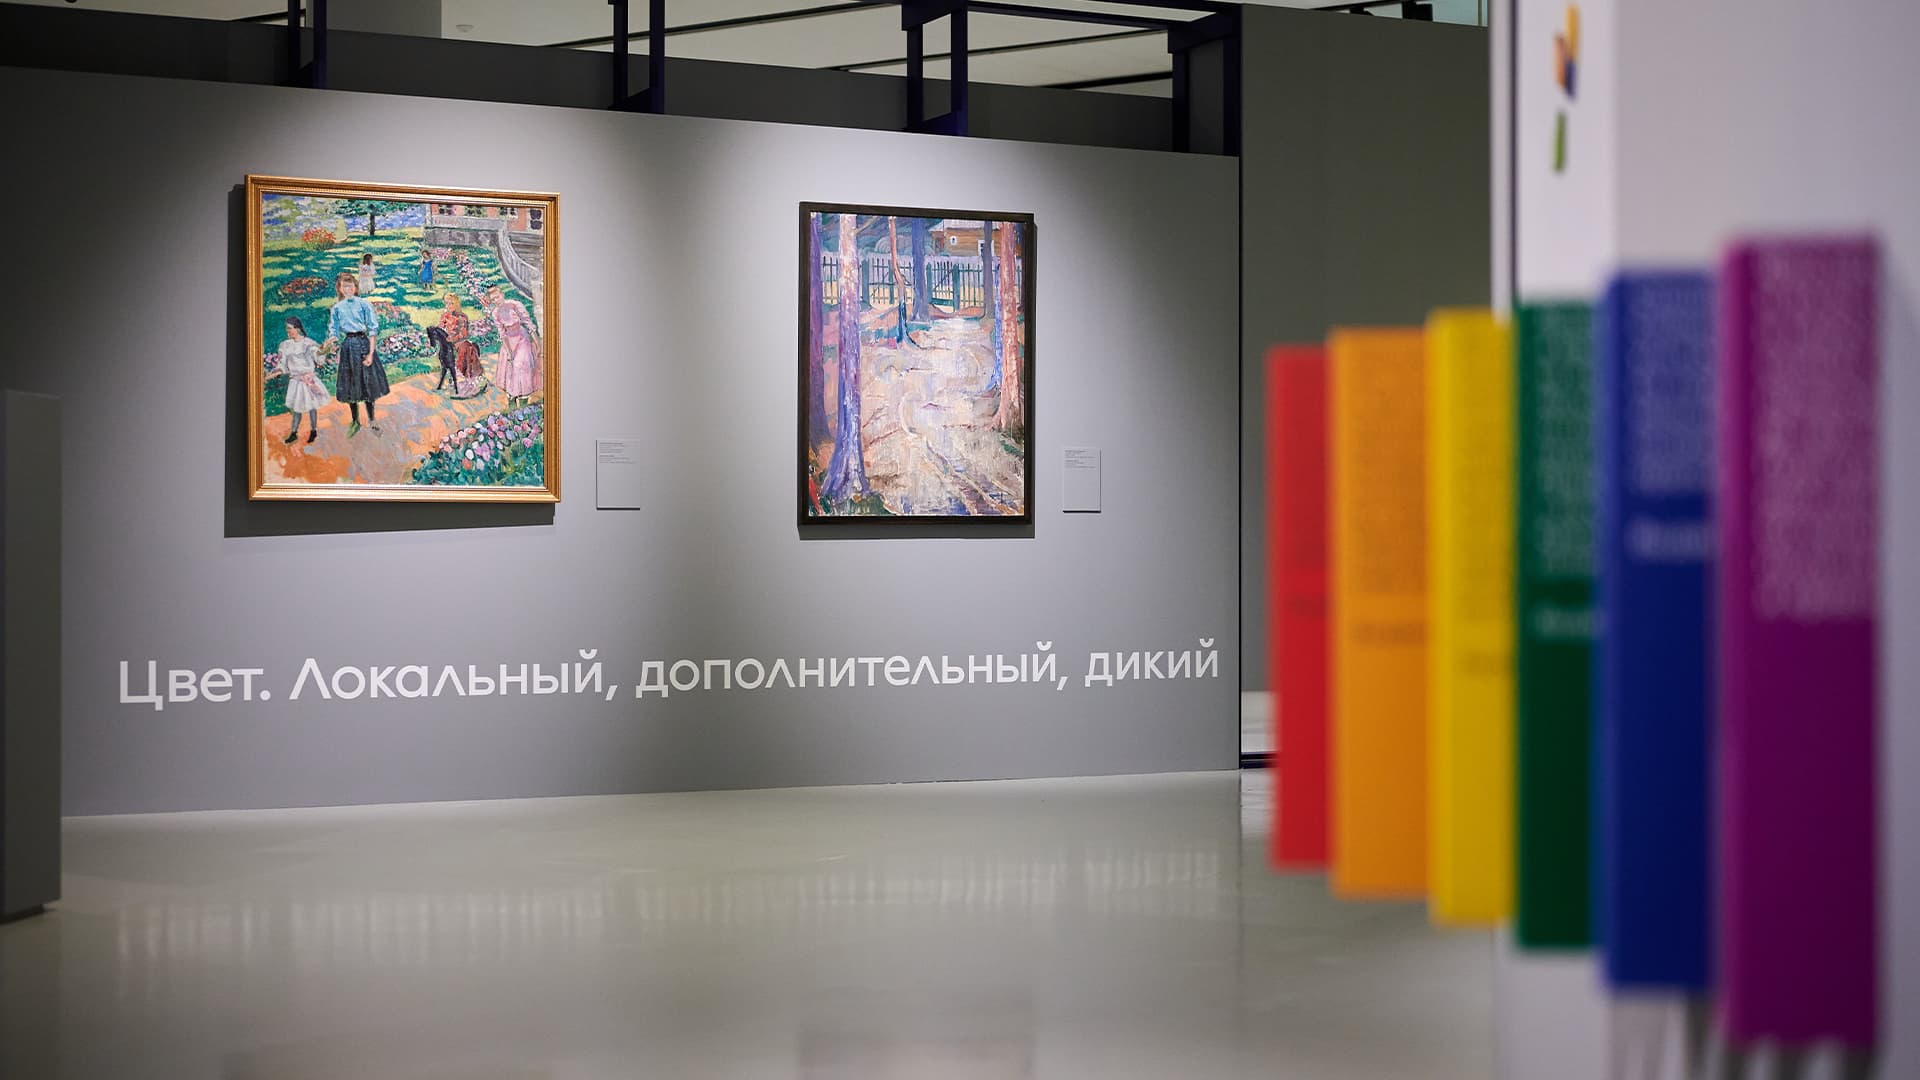 Утраченные имена и неподписанное искусство: что смотреть на новой выставке в Музее русского импрессионизма